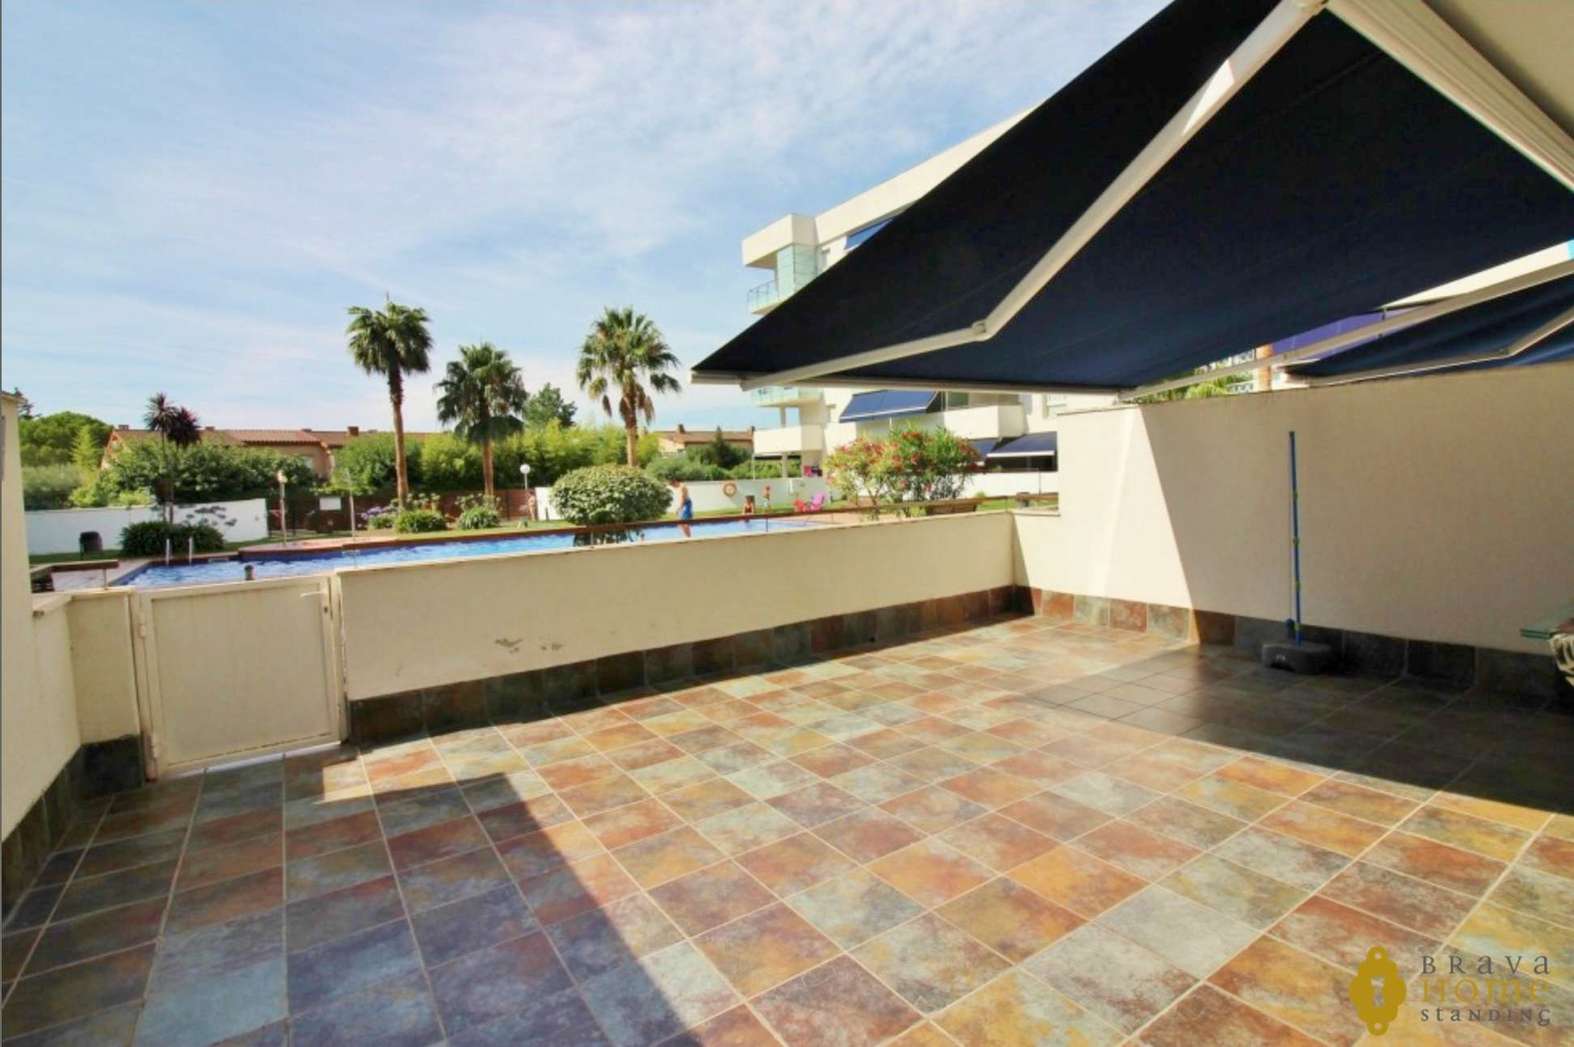 Estupendo apartamento con terraza de 45m2 en venta en Rosas - Santa